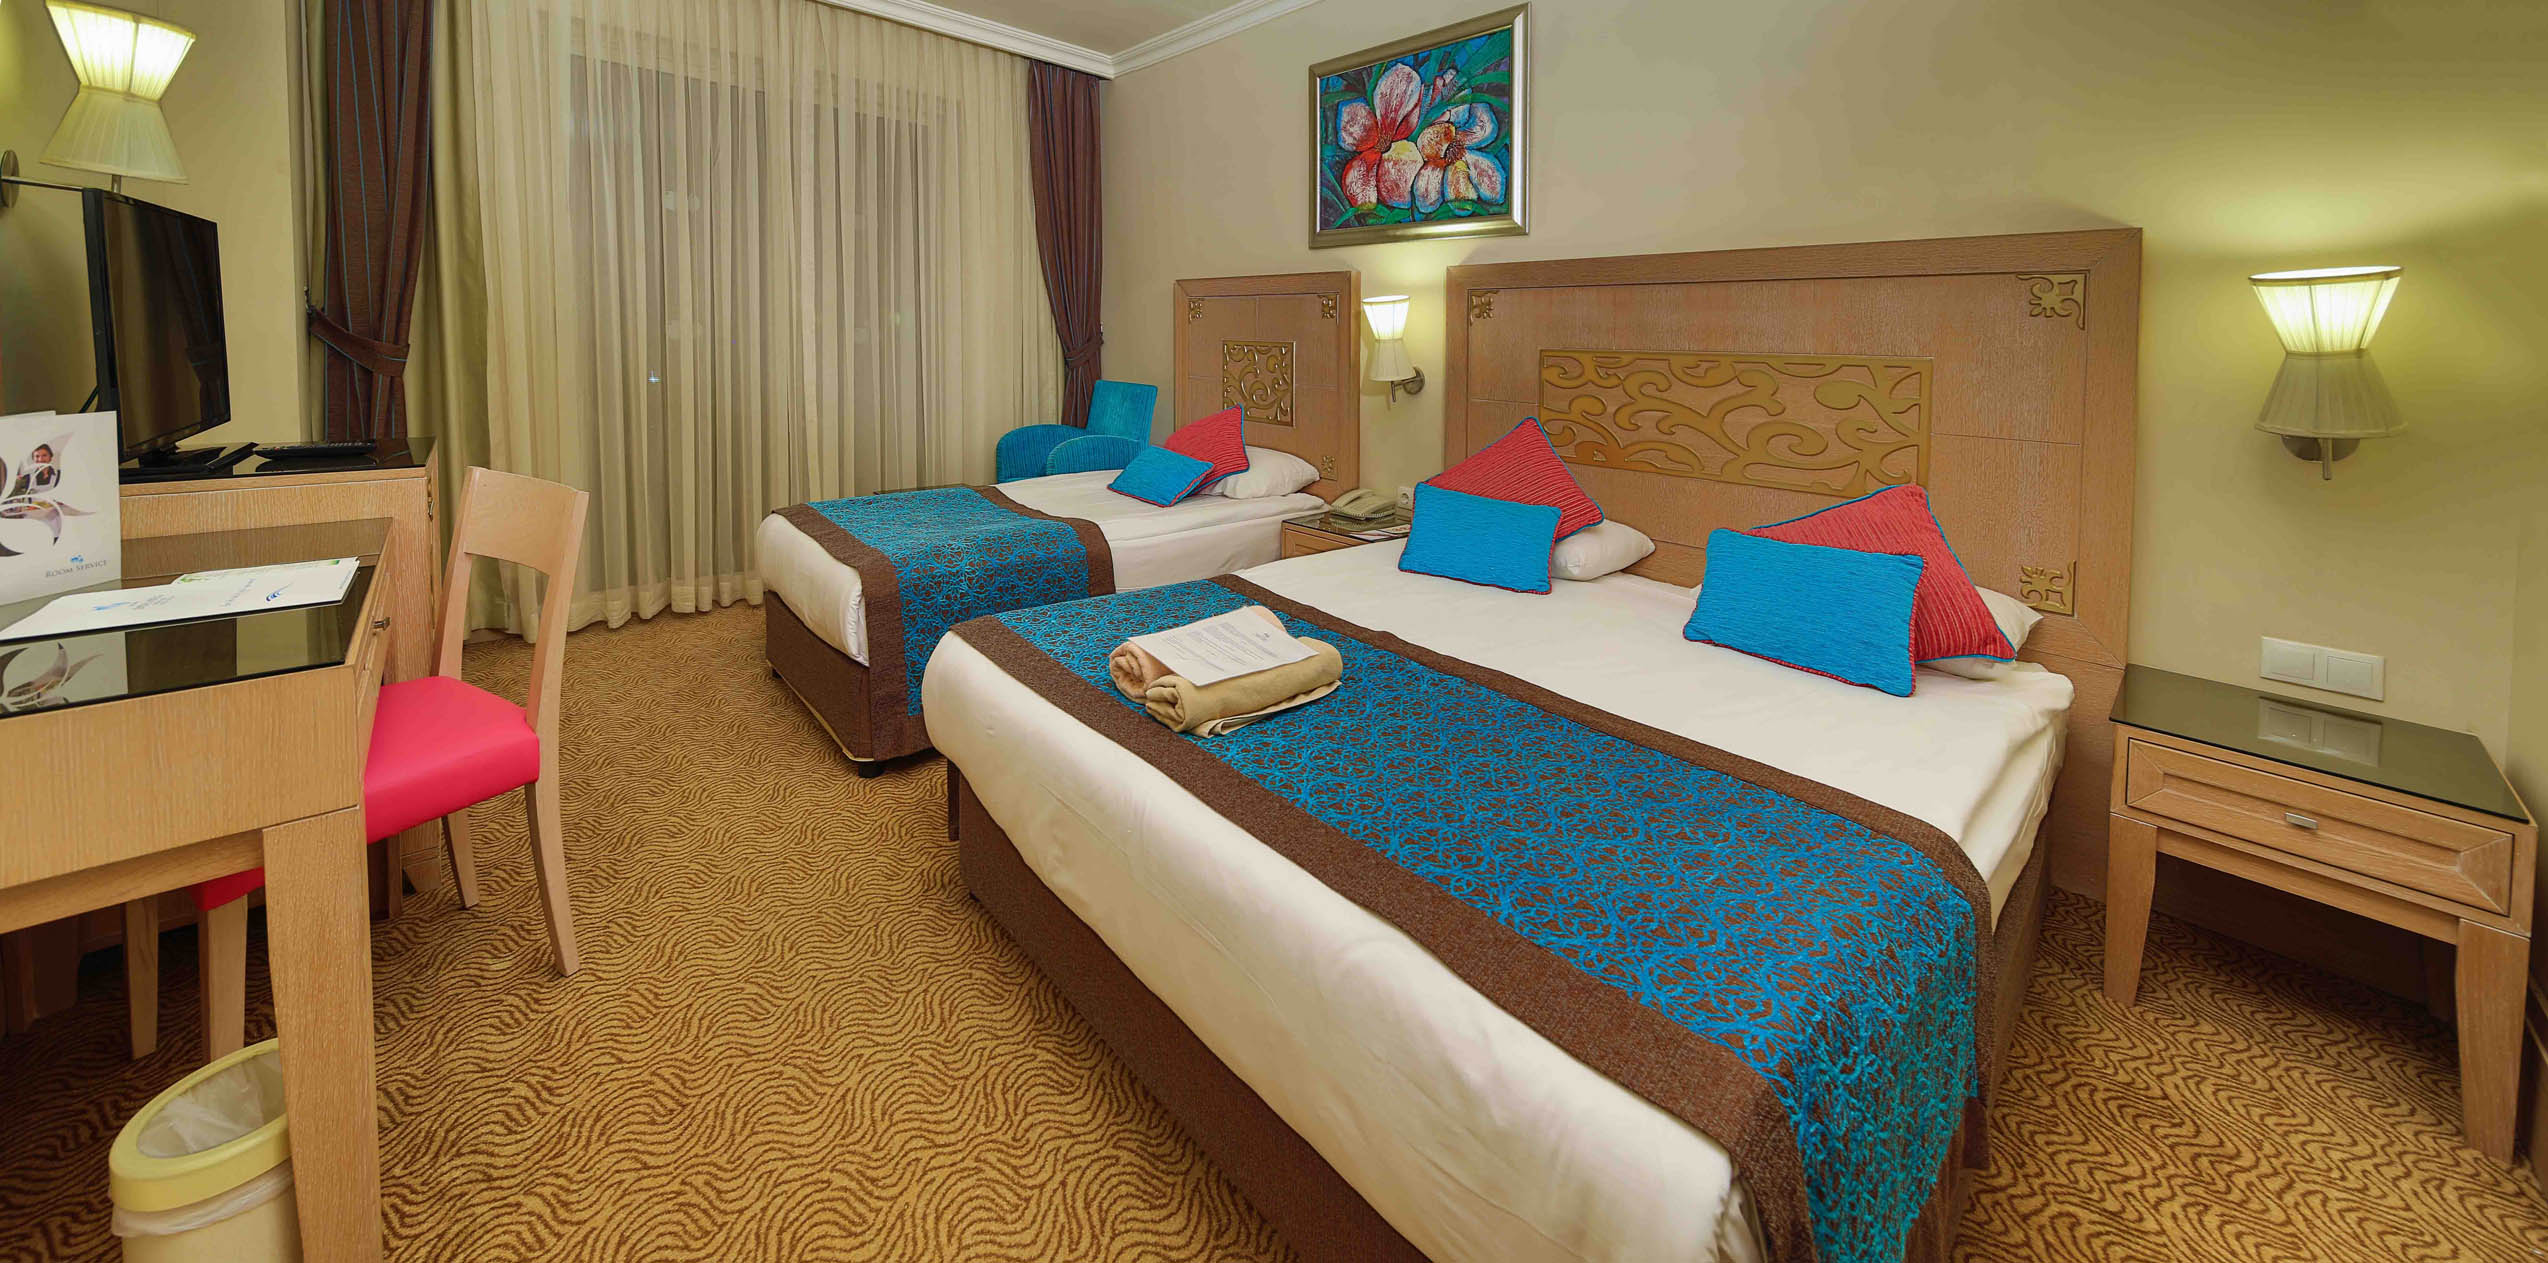 Crystal Deluxe Resort & SPA Hotel Yandan  Deniz Manzaralı Standart Oda  